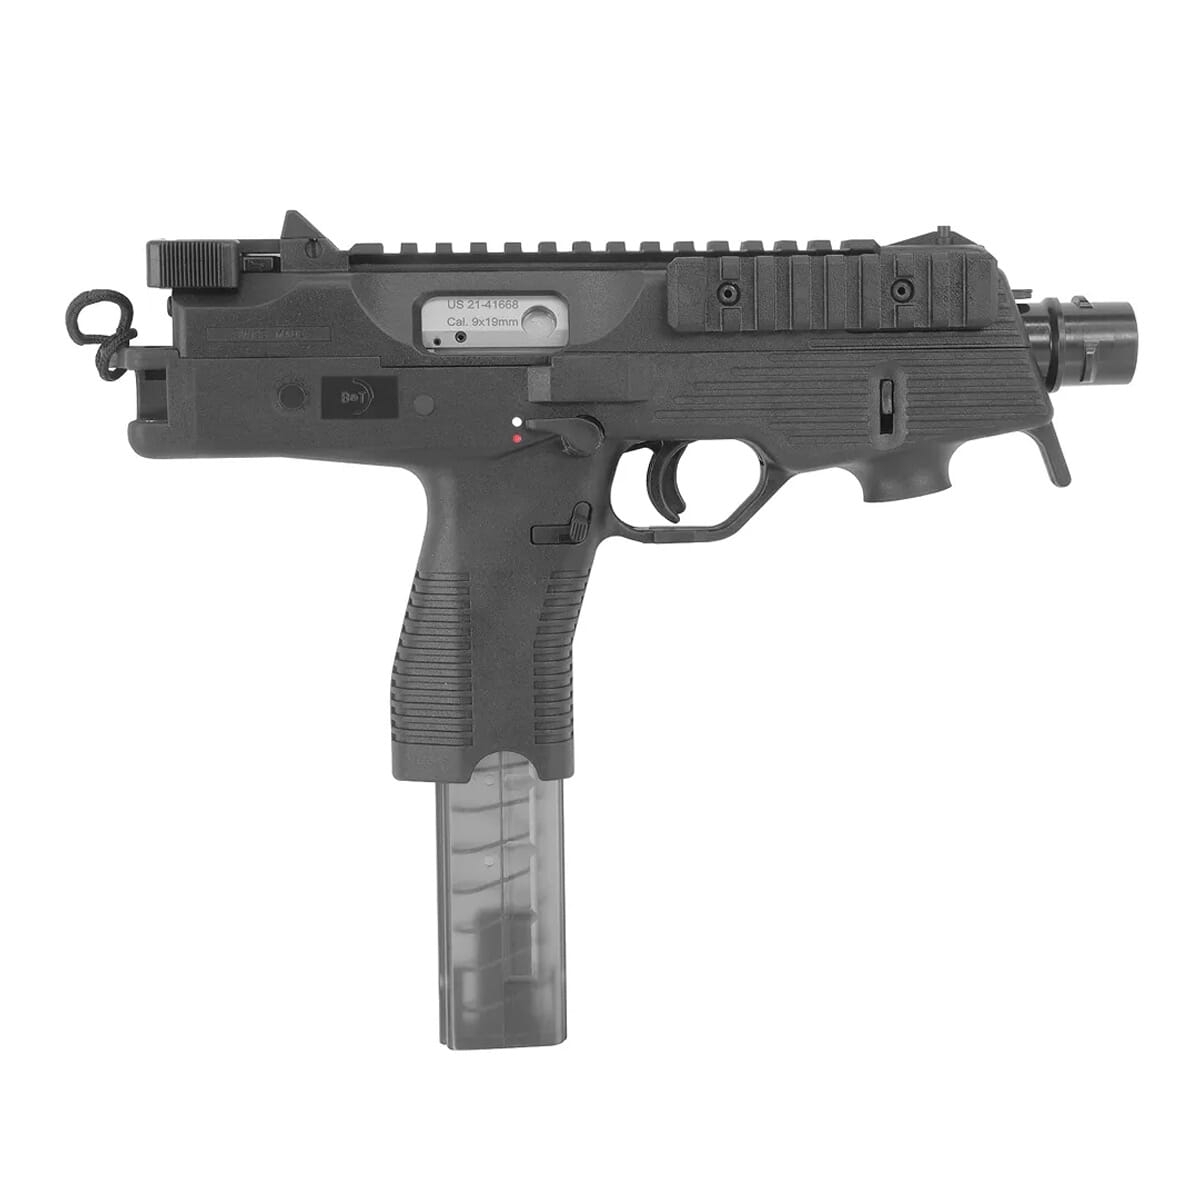 B&T TP9-N 9mm 5" Bbl Semi-Auto Tactical 30rd Black Pistol BT-30105-N-US